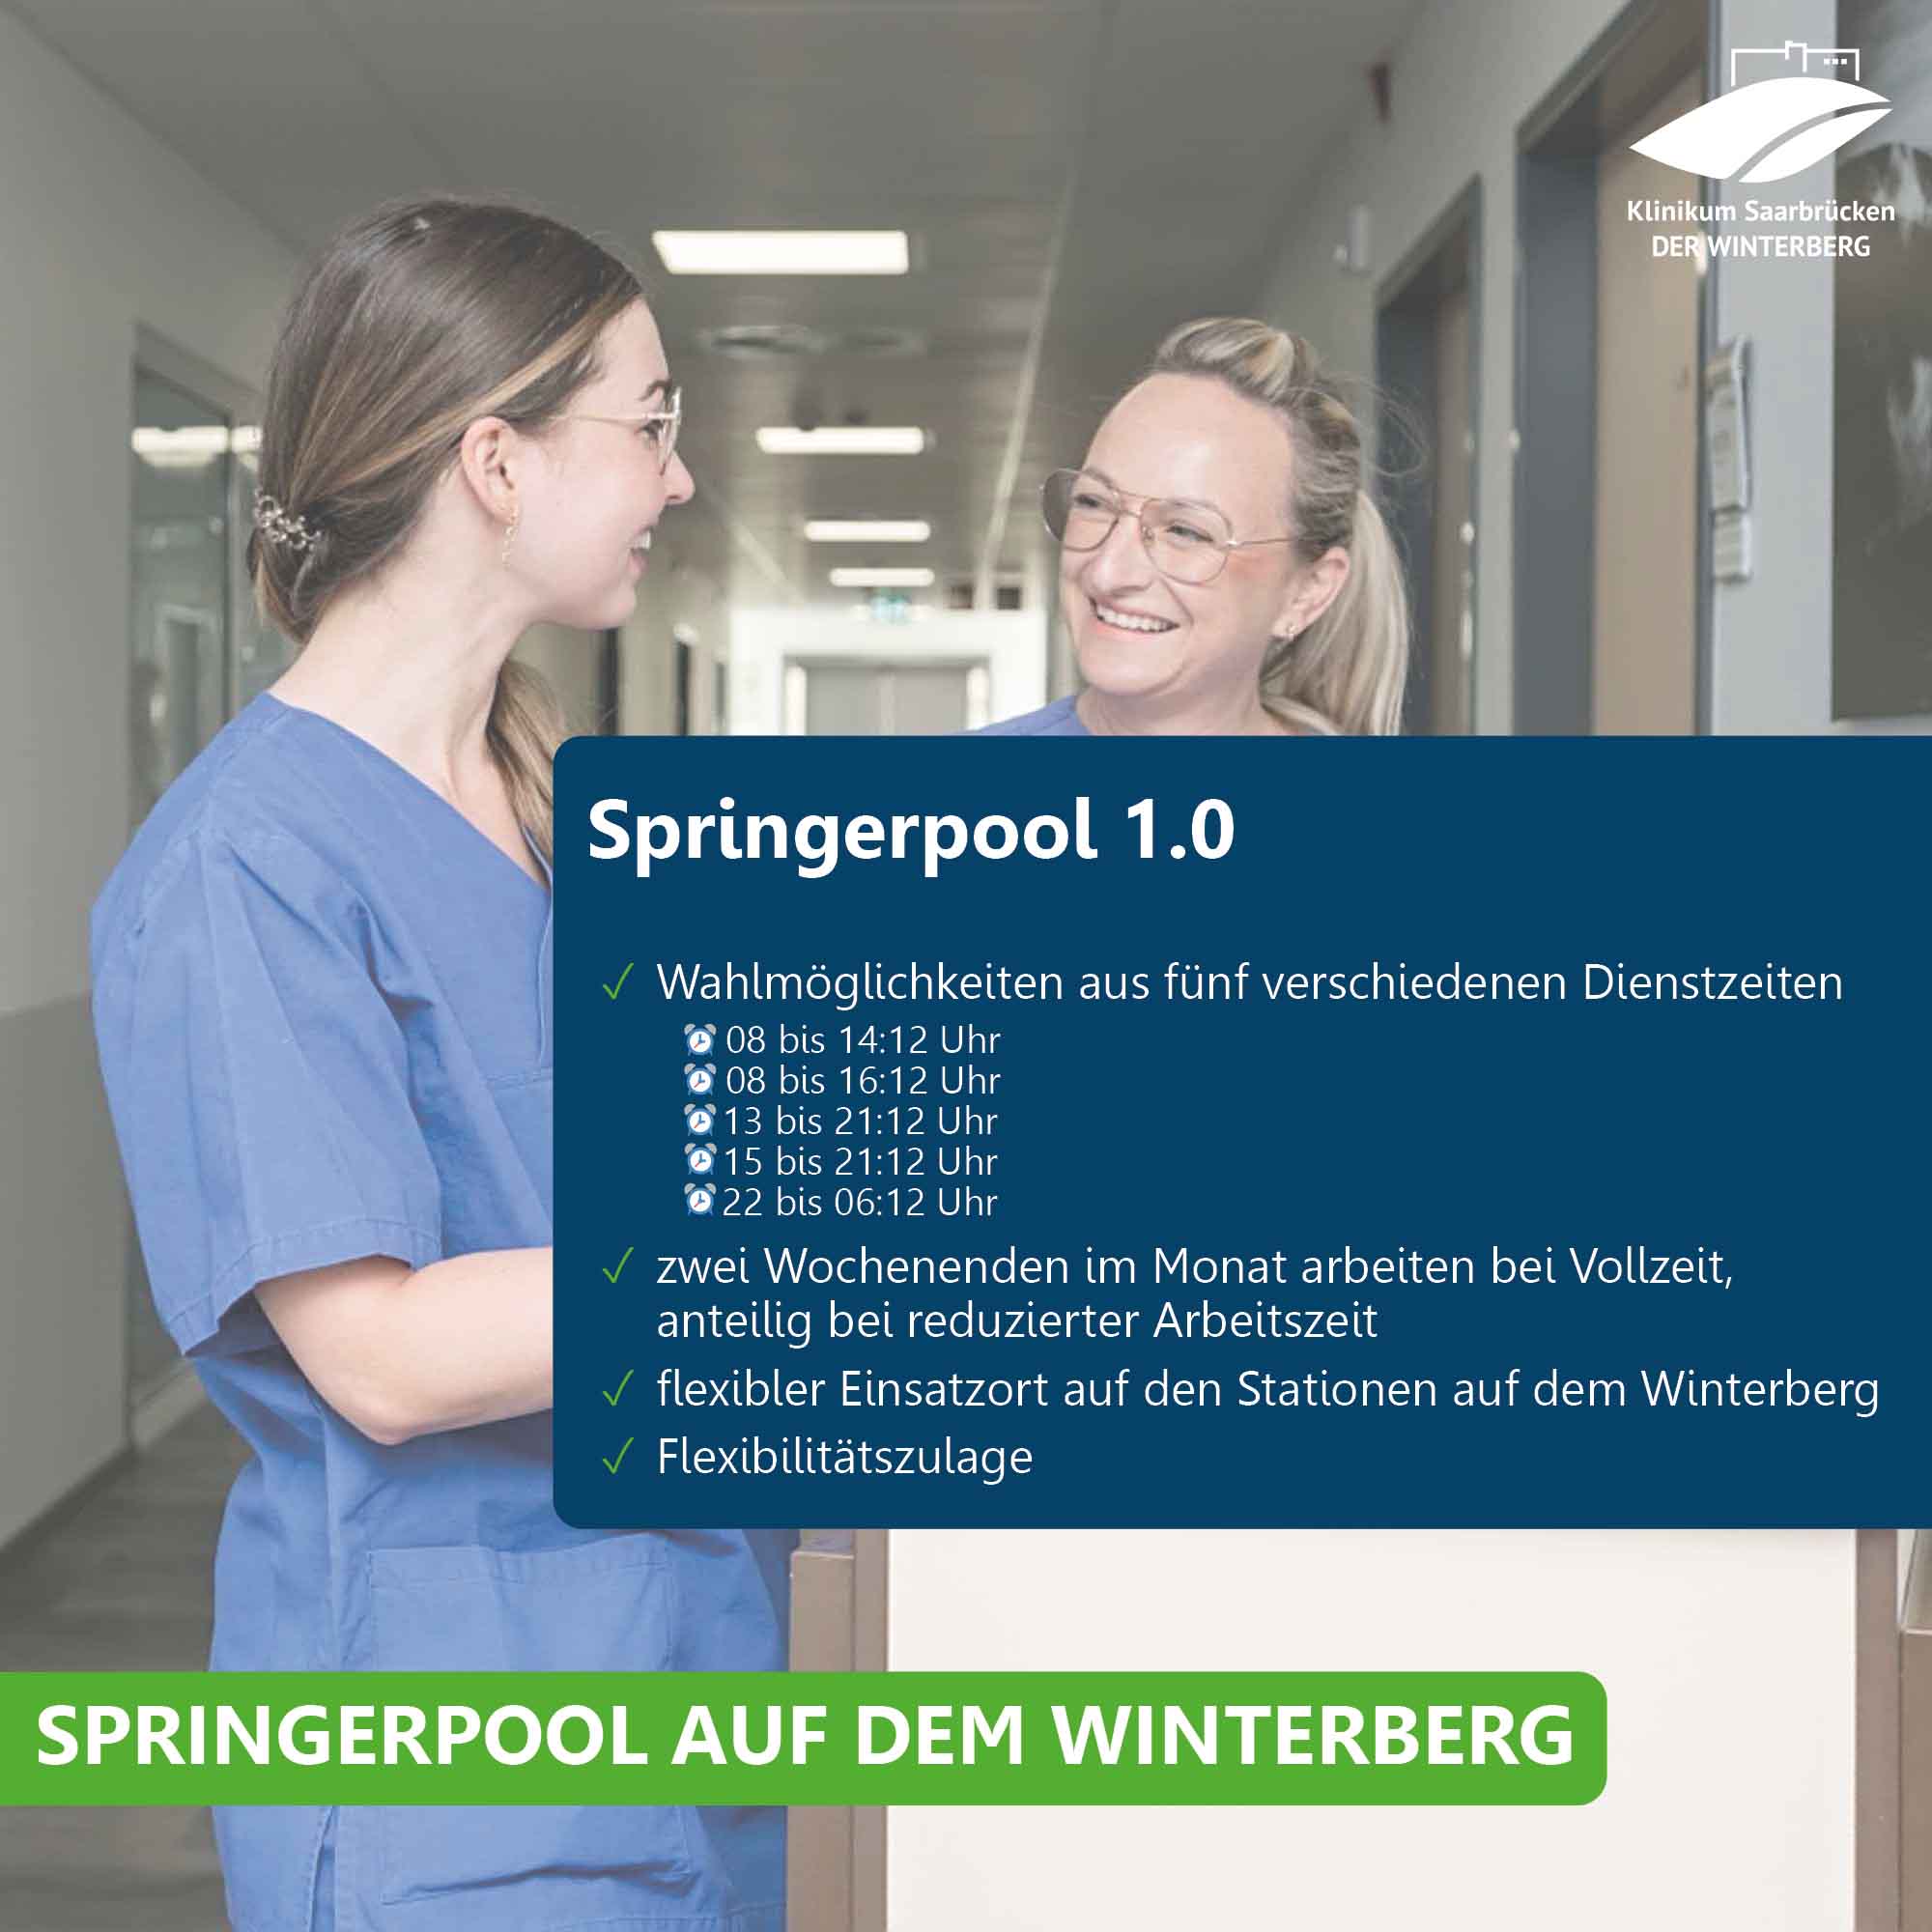 Pflegekräfte im Klinikum Saarbrücken und Übersicht über das Angebot im Springerpool 1.0